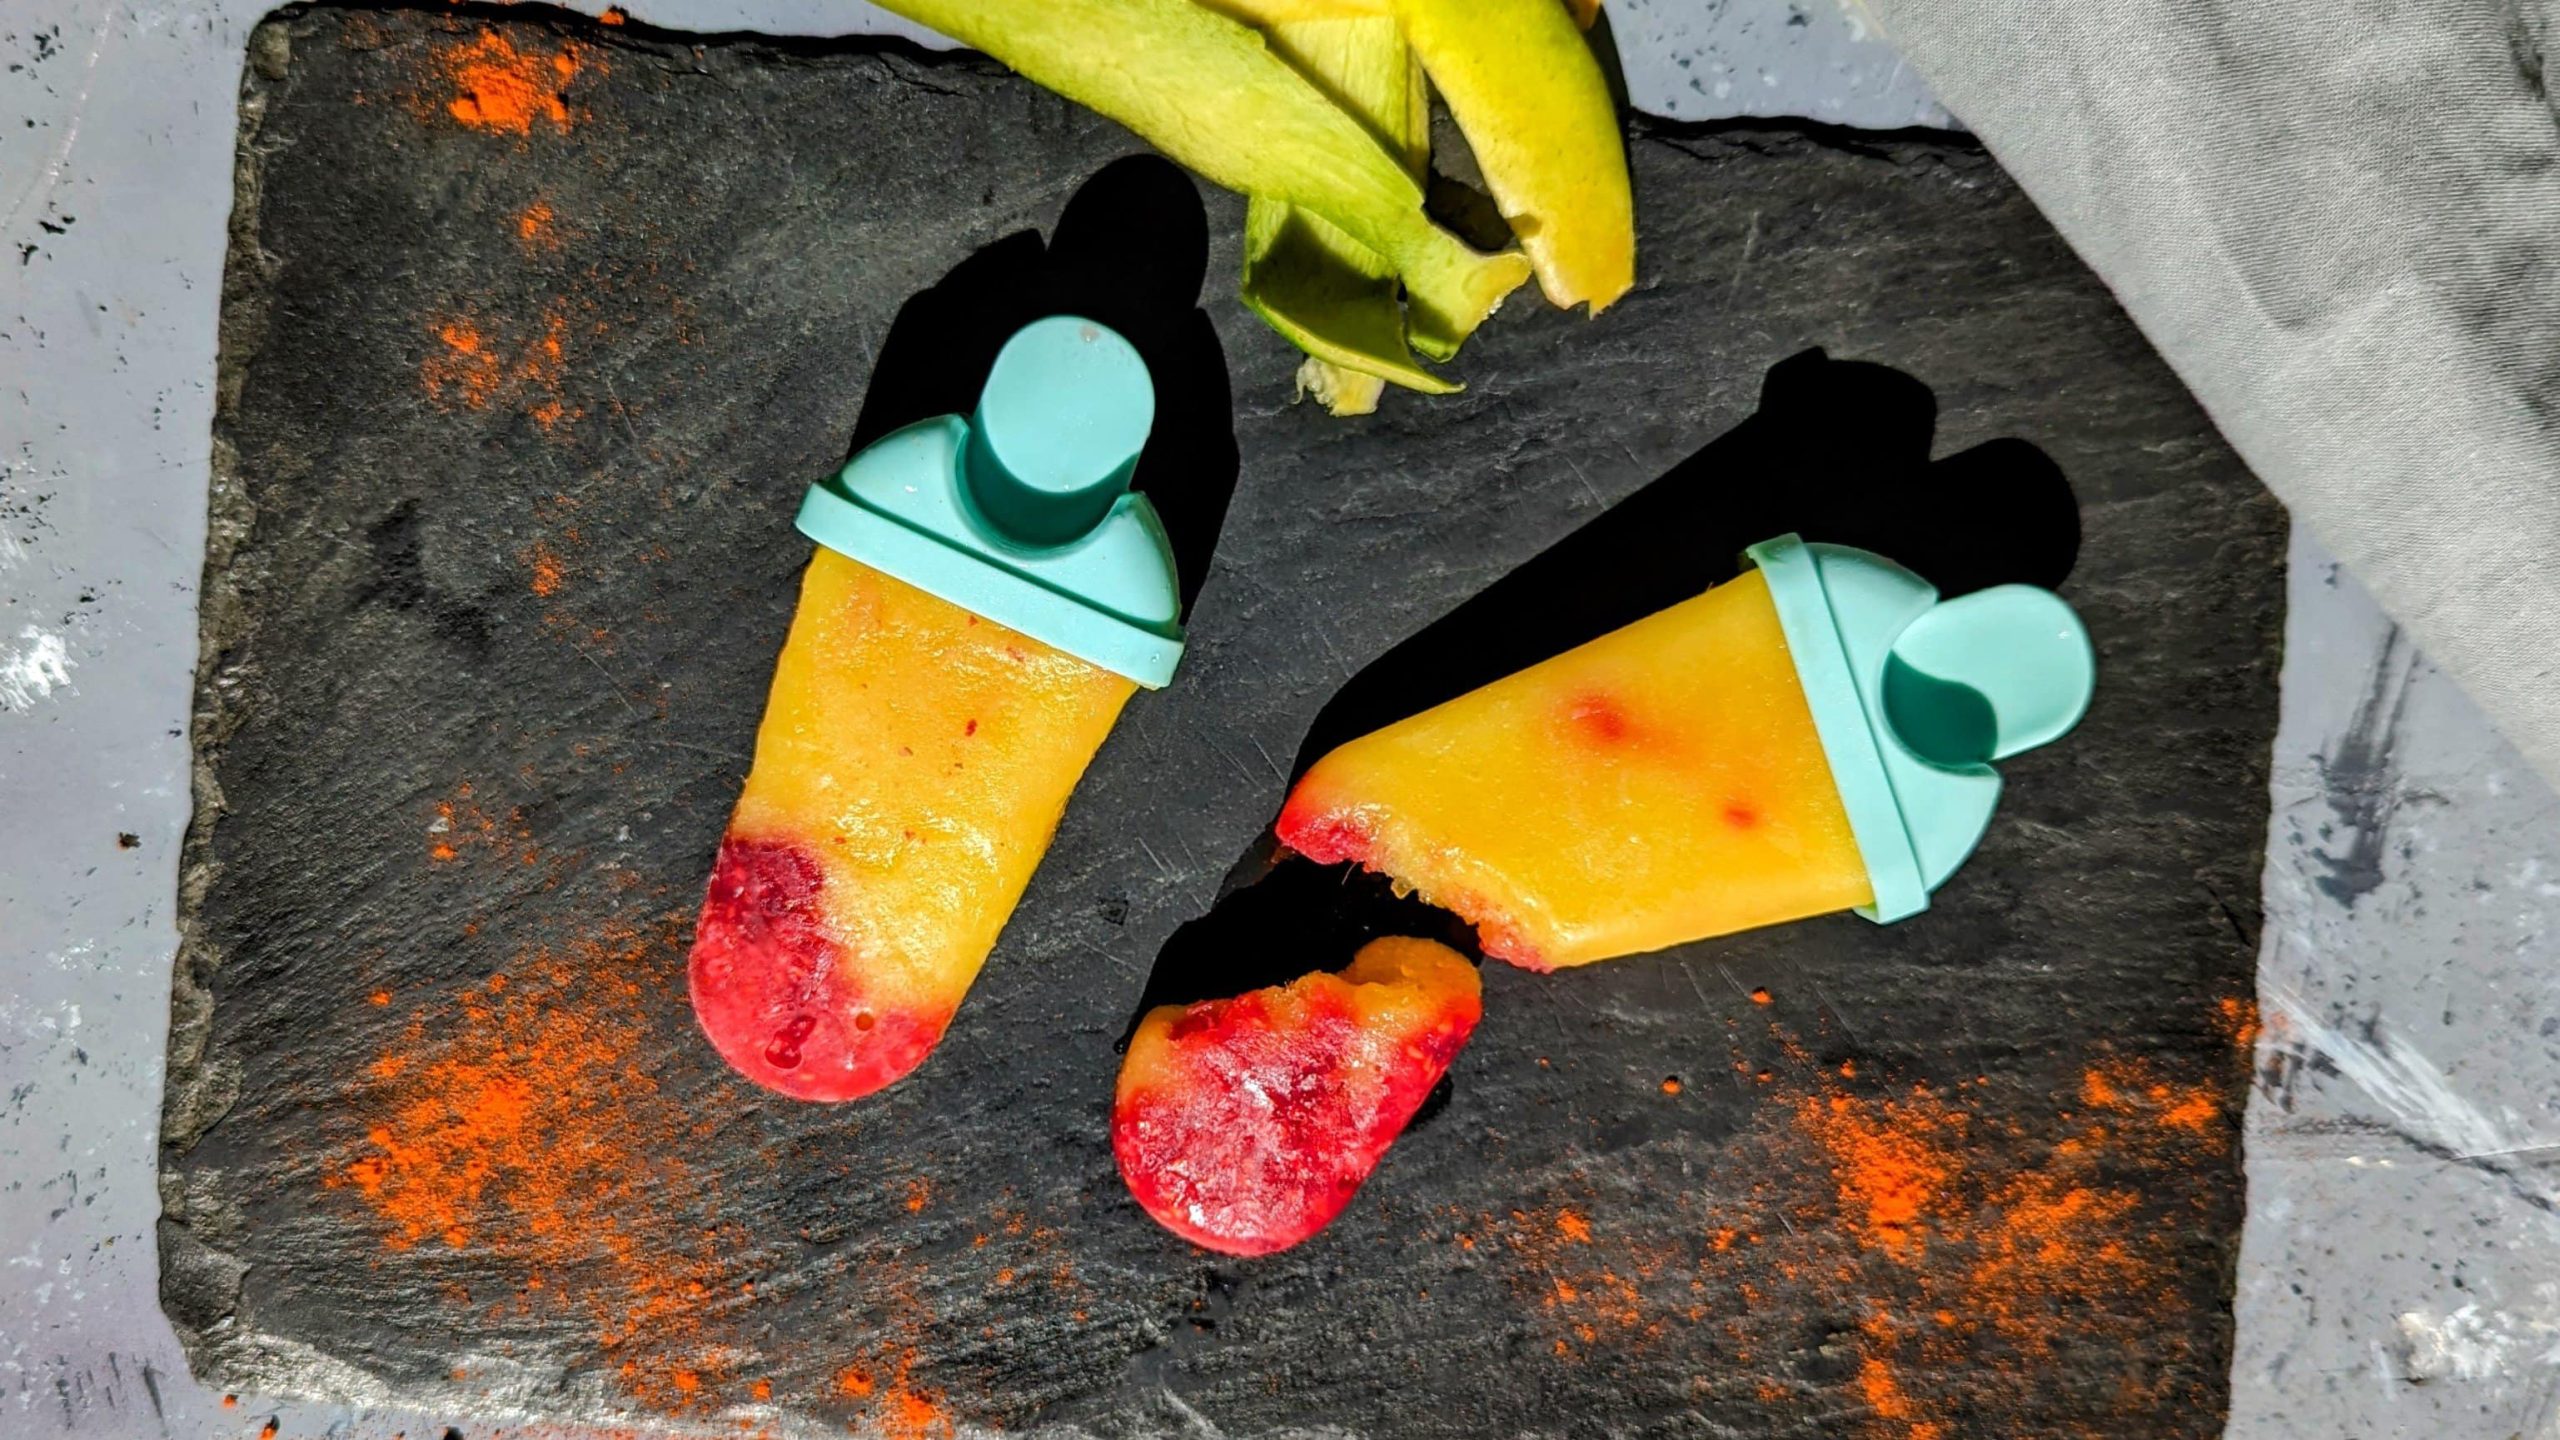 Zwei Mango-Eis mit Himbeere und Cayenne auf einer schwarzen Schieferplatte und grauem Untergrund. Daneben Mangoschalen und Cayennepfeffer.